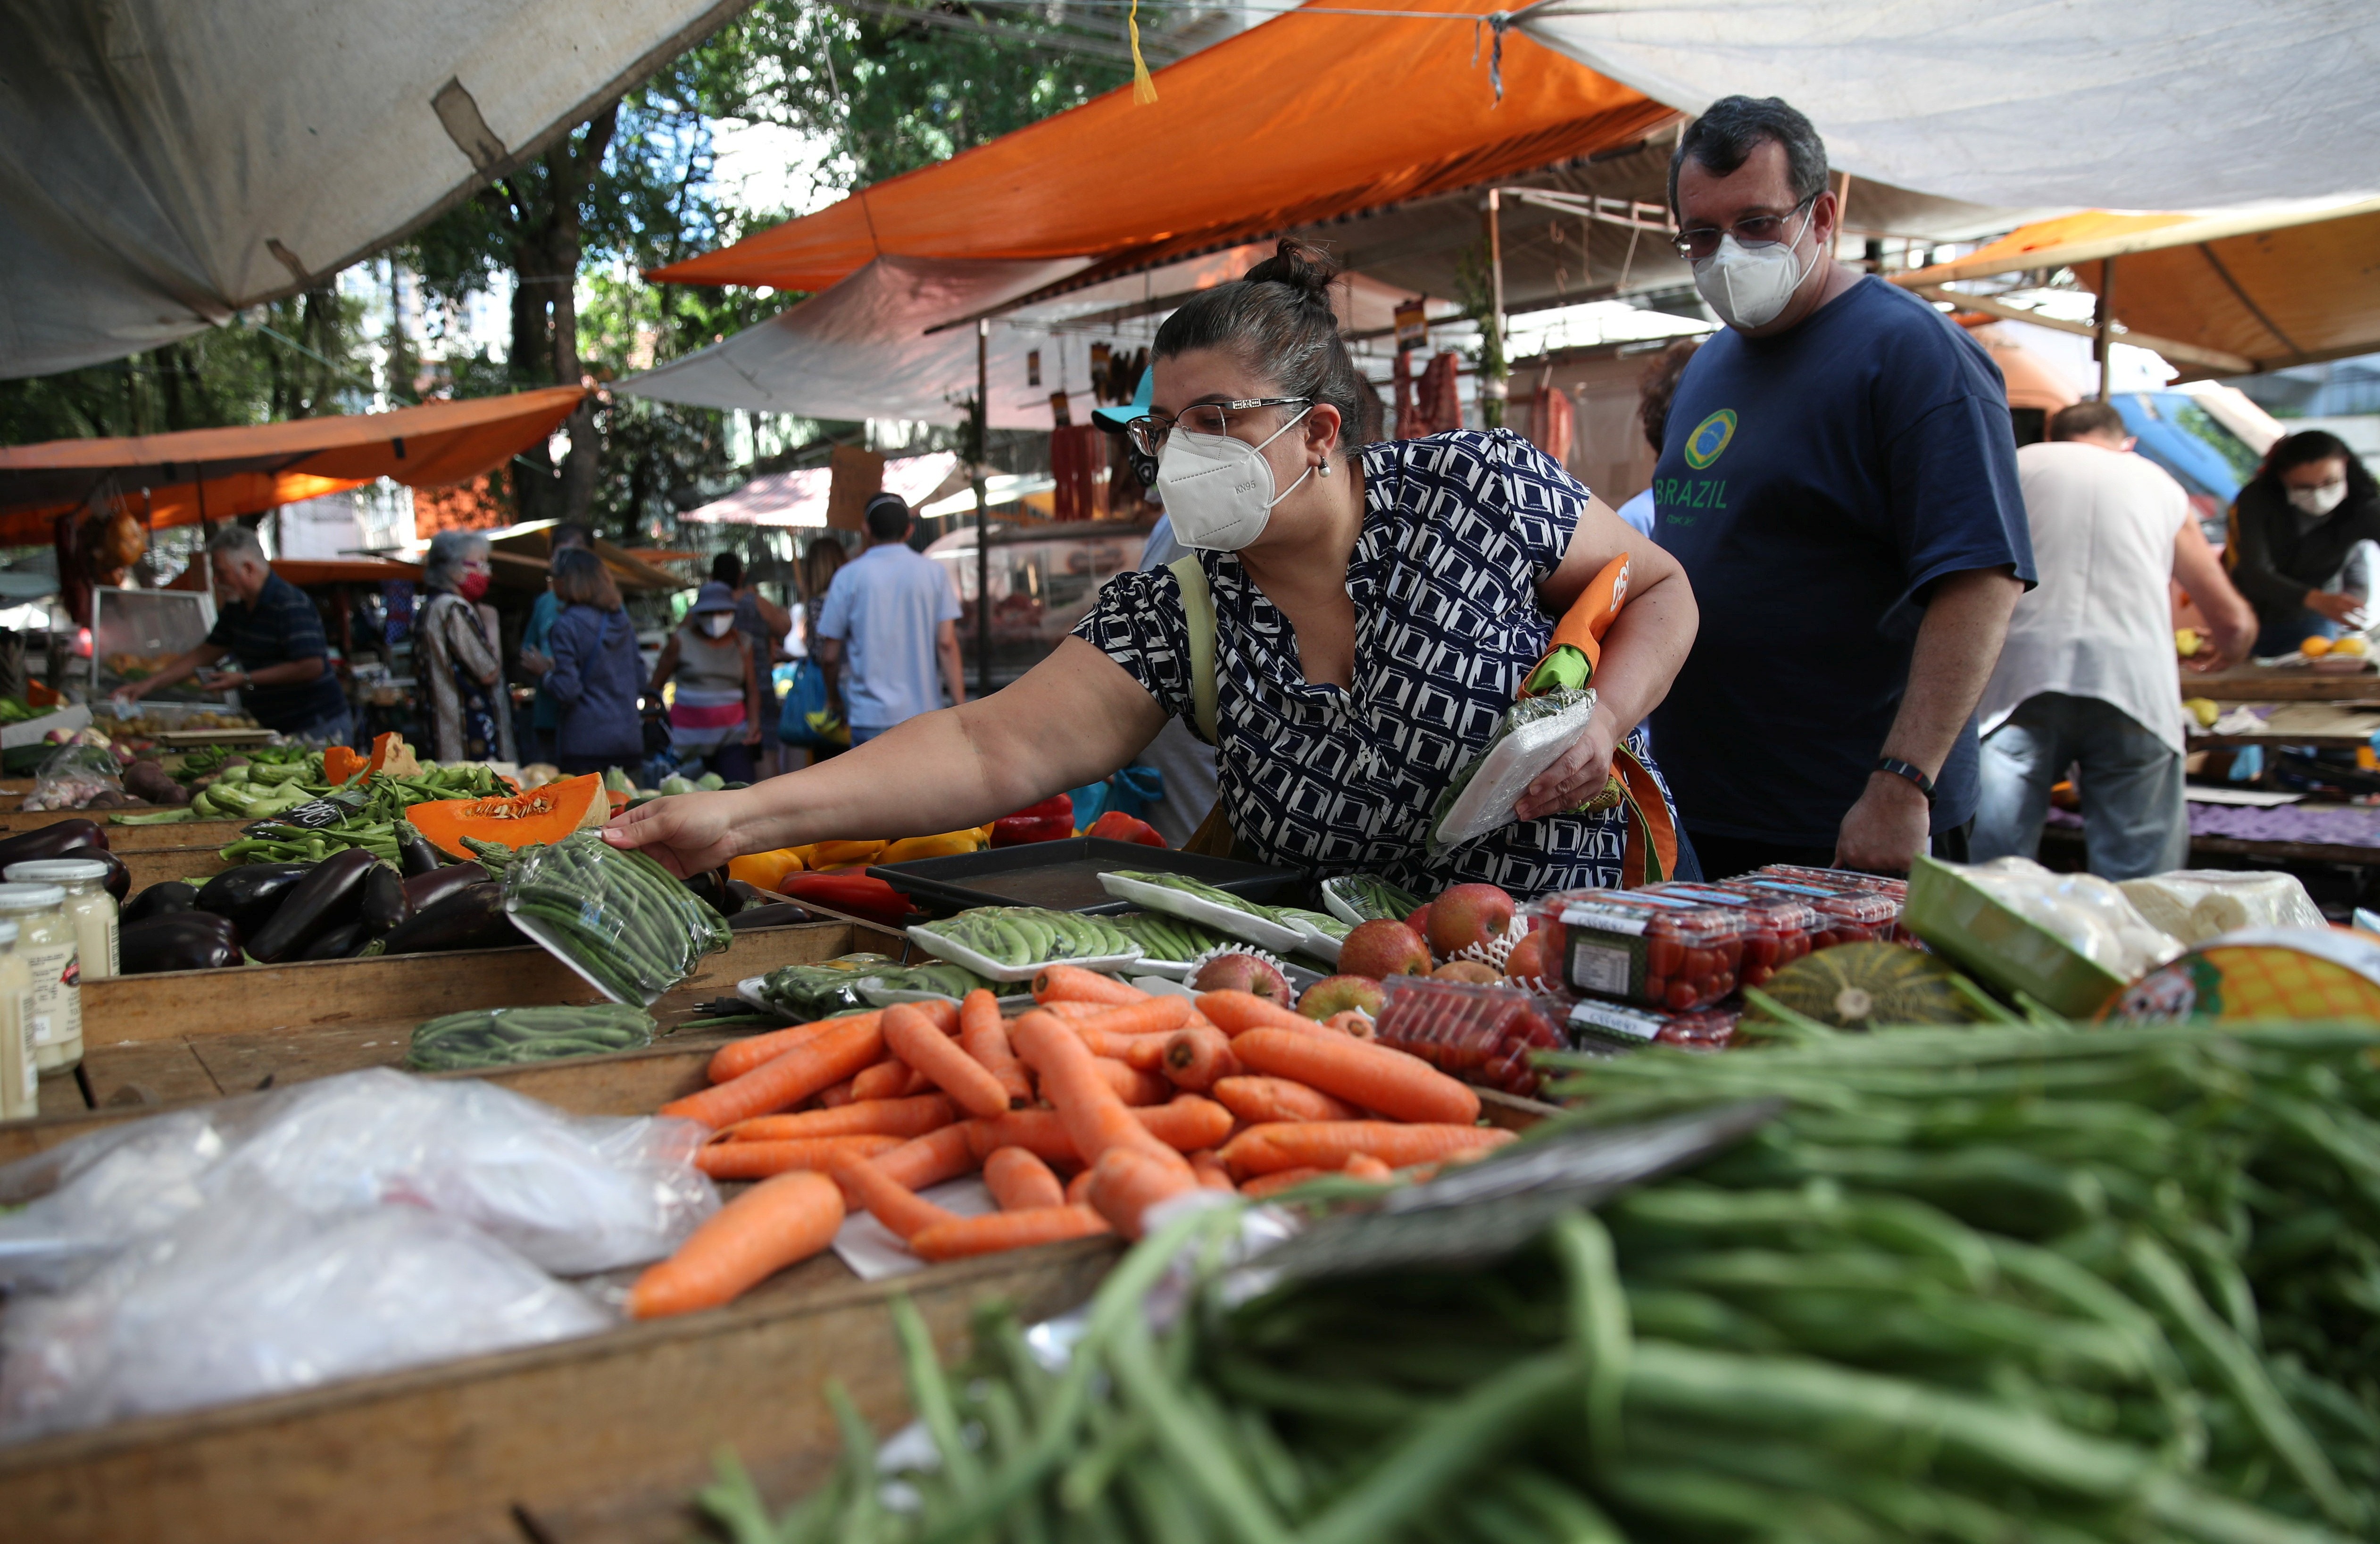 Consumidores fazem compras em feira no Rio de Janeiro  (Foto: REUTERS/Ricardo Moraes)